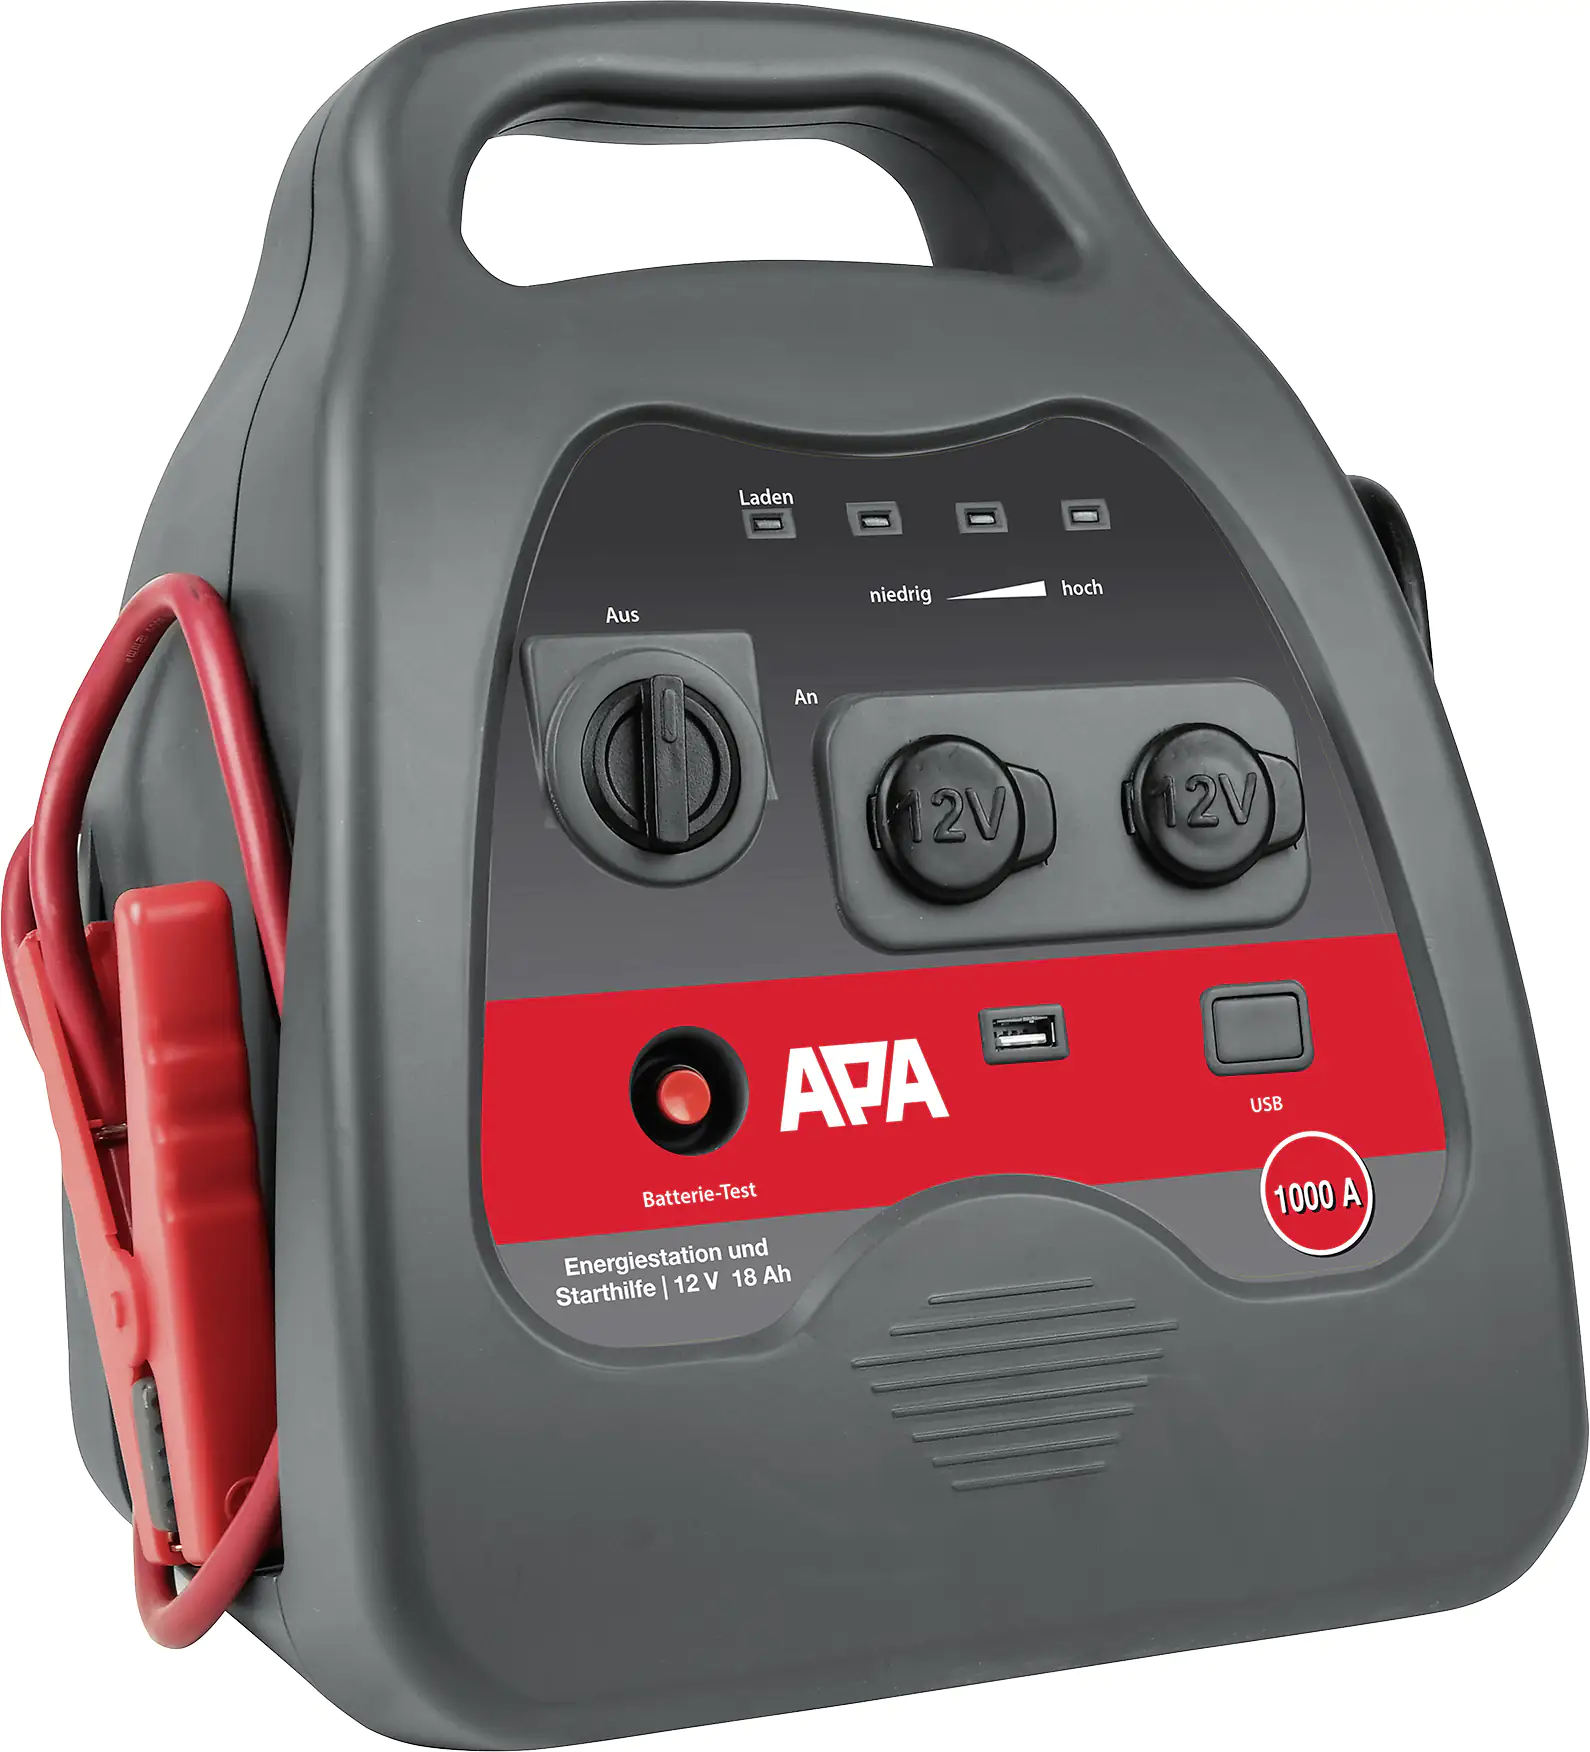 APA Powerstation, 24 V, für Starthilfe